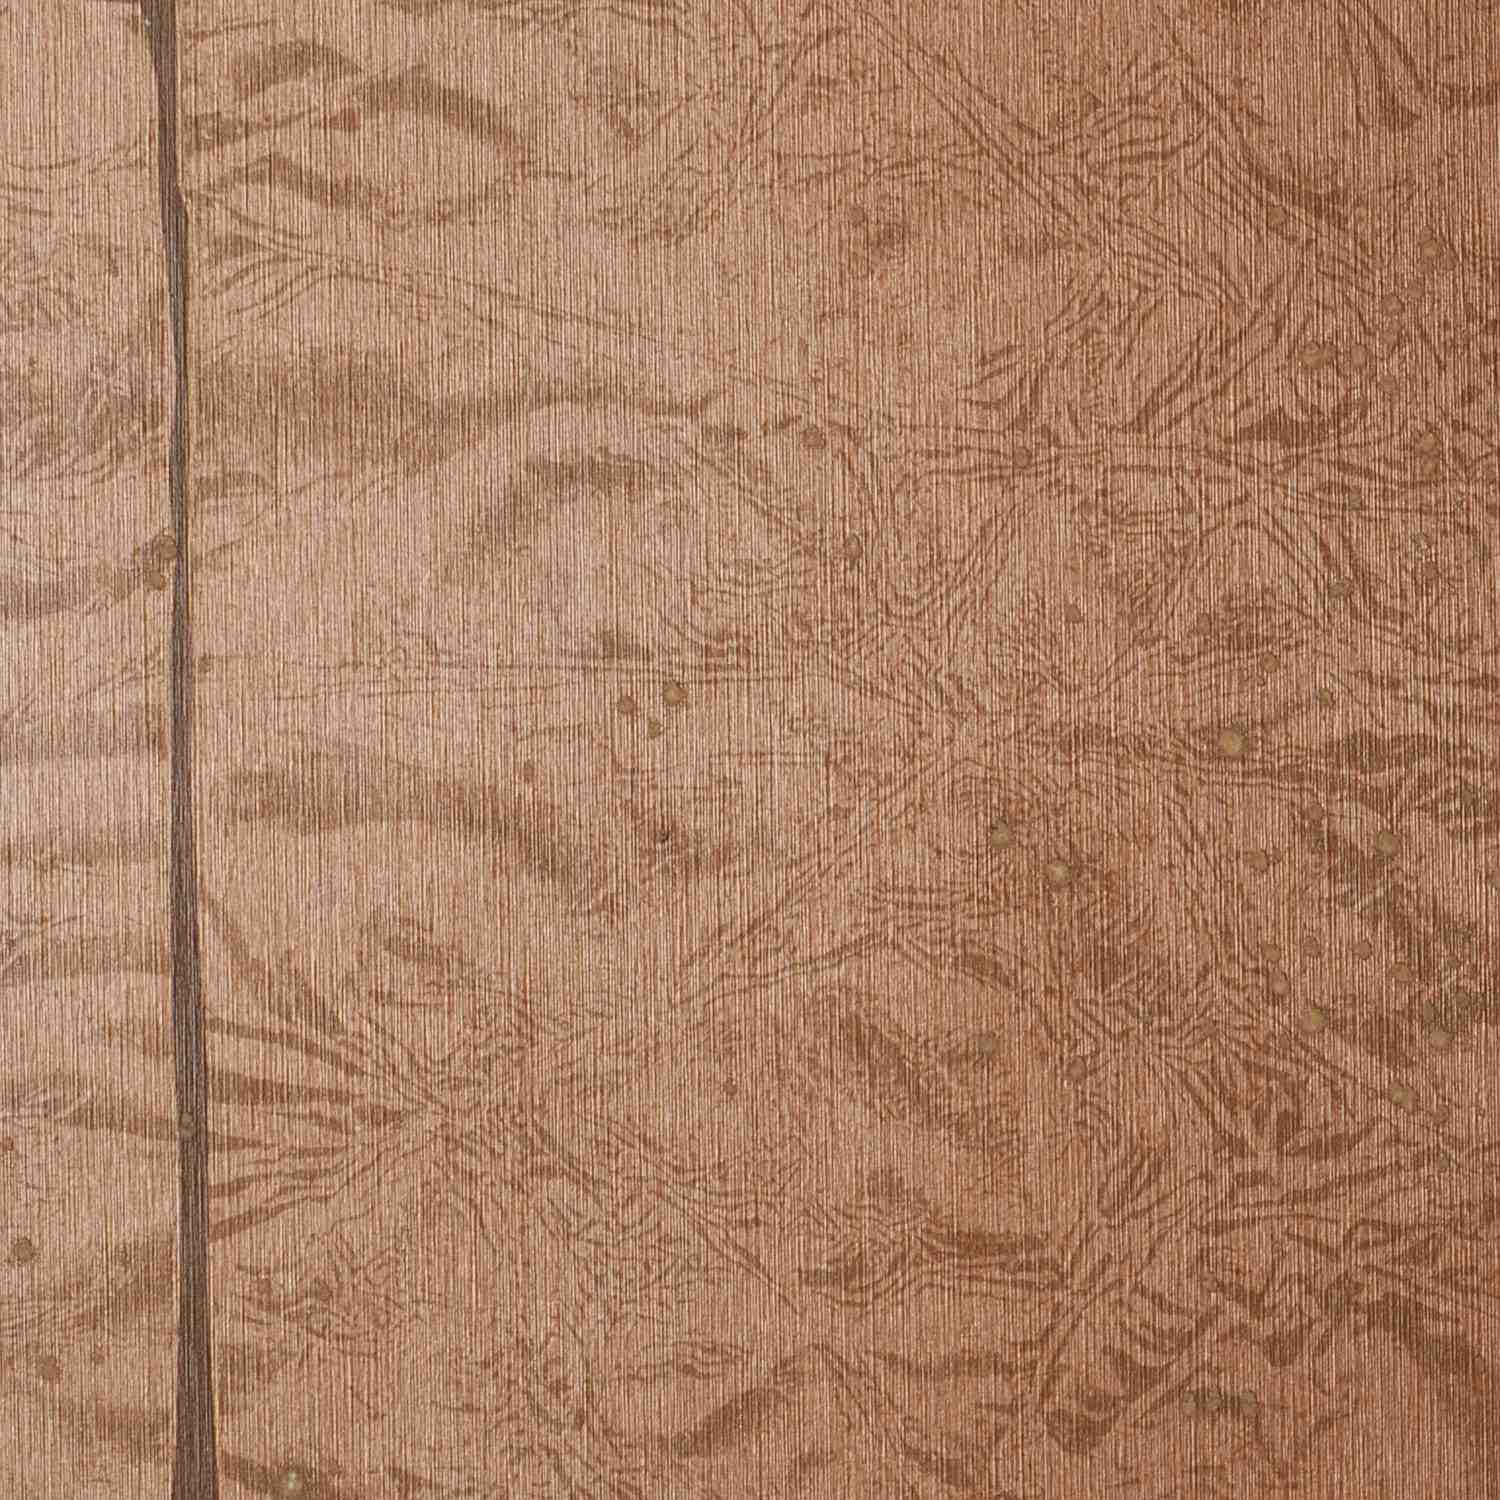 Patina Aged Foil Leaf Square   Deep Copper [FOIL 9001] Designer